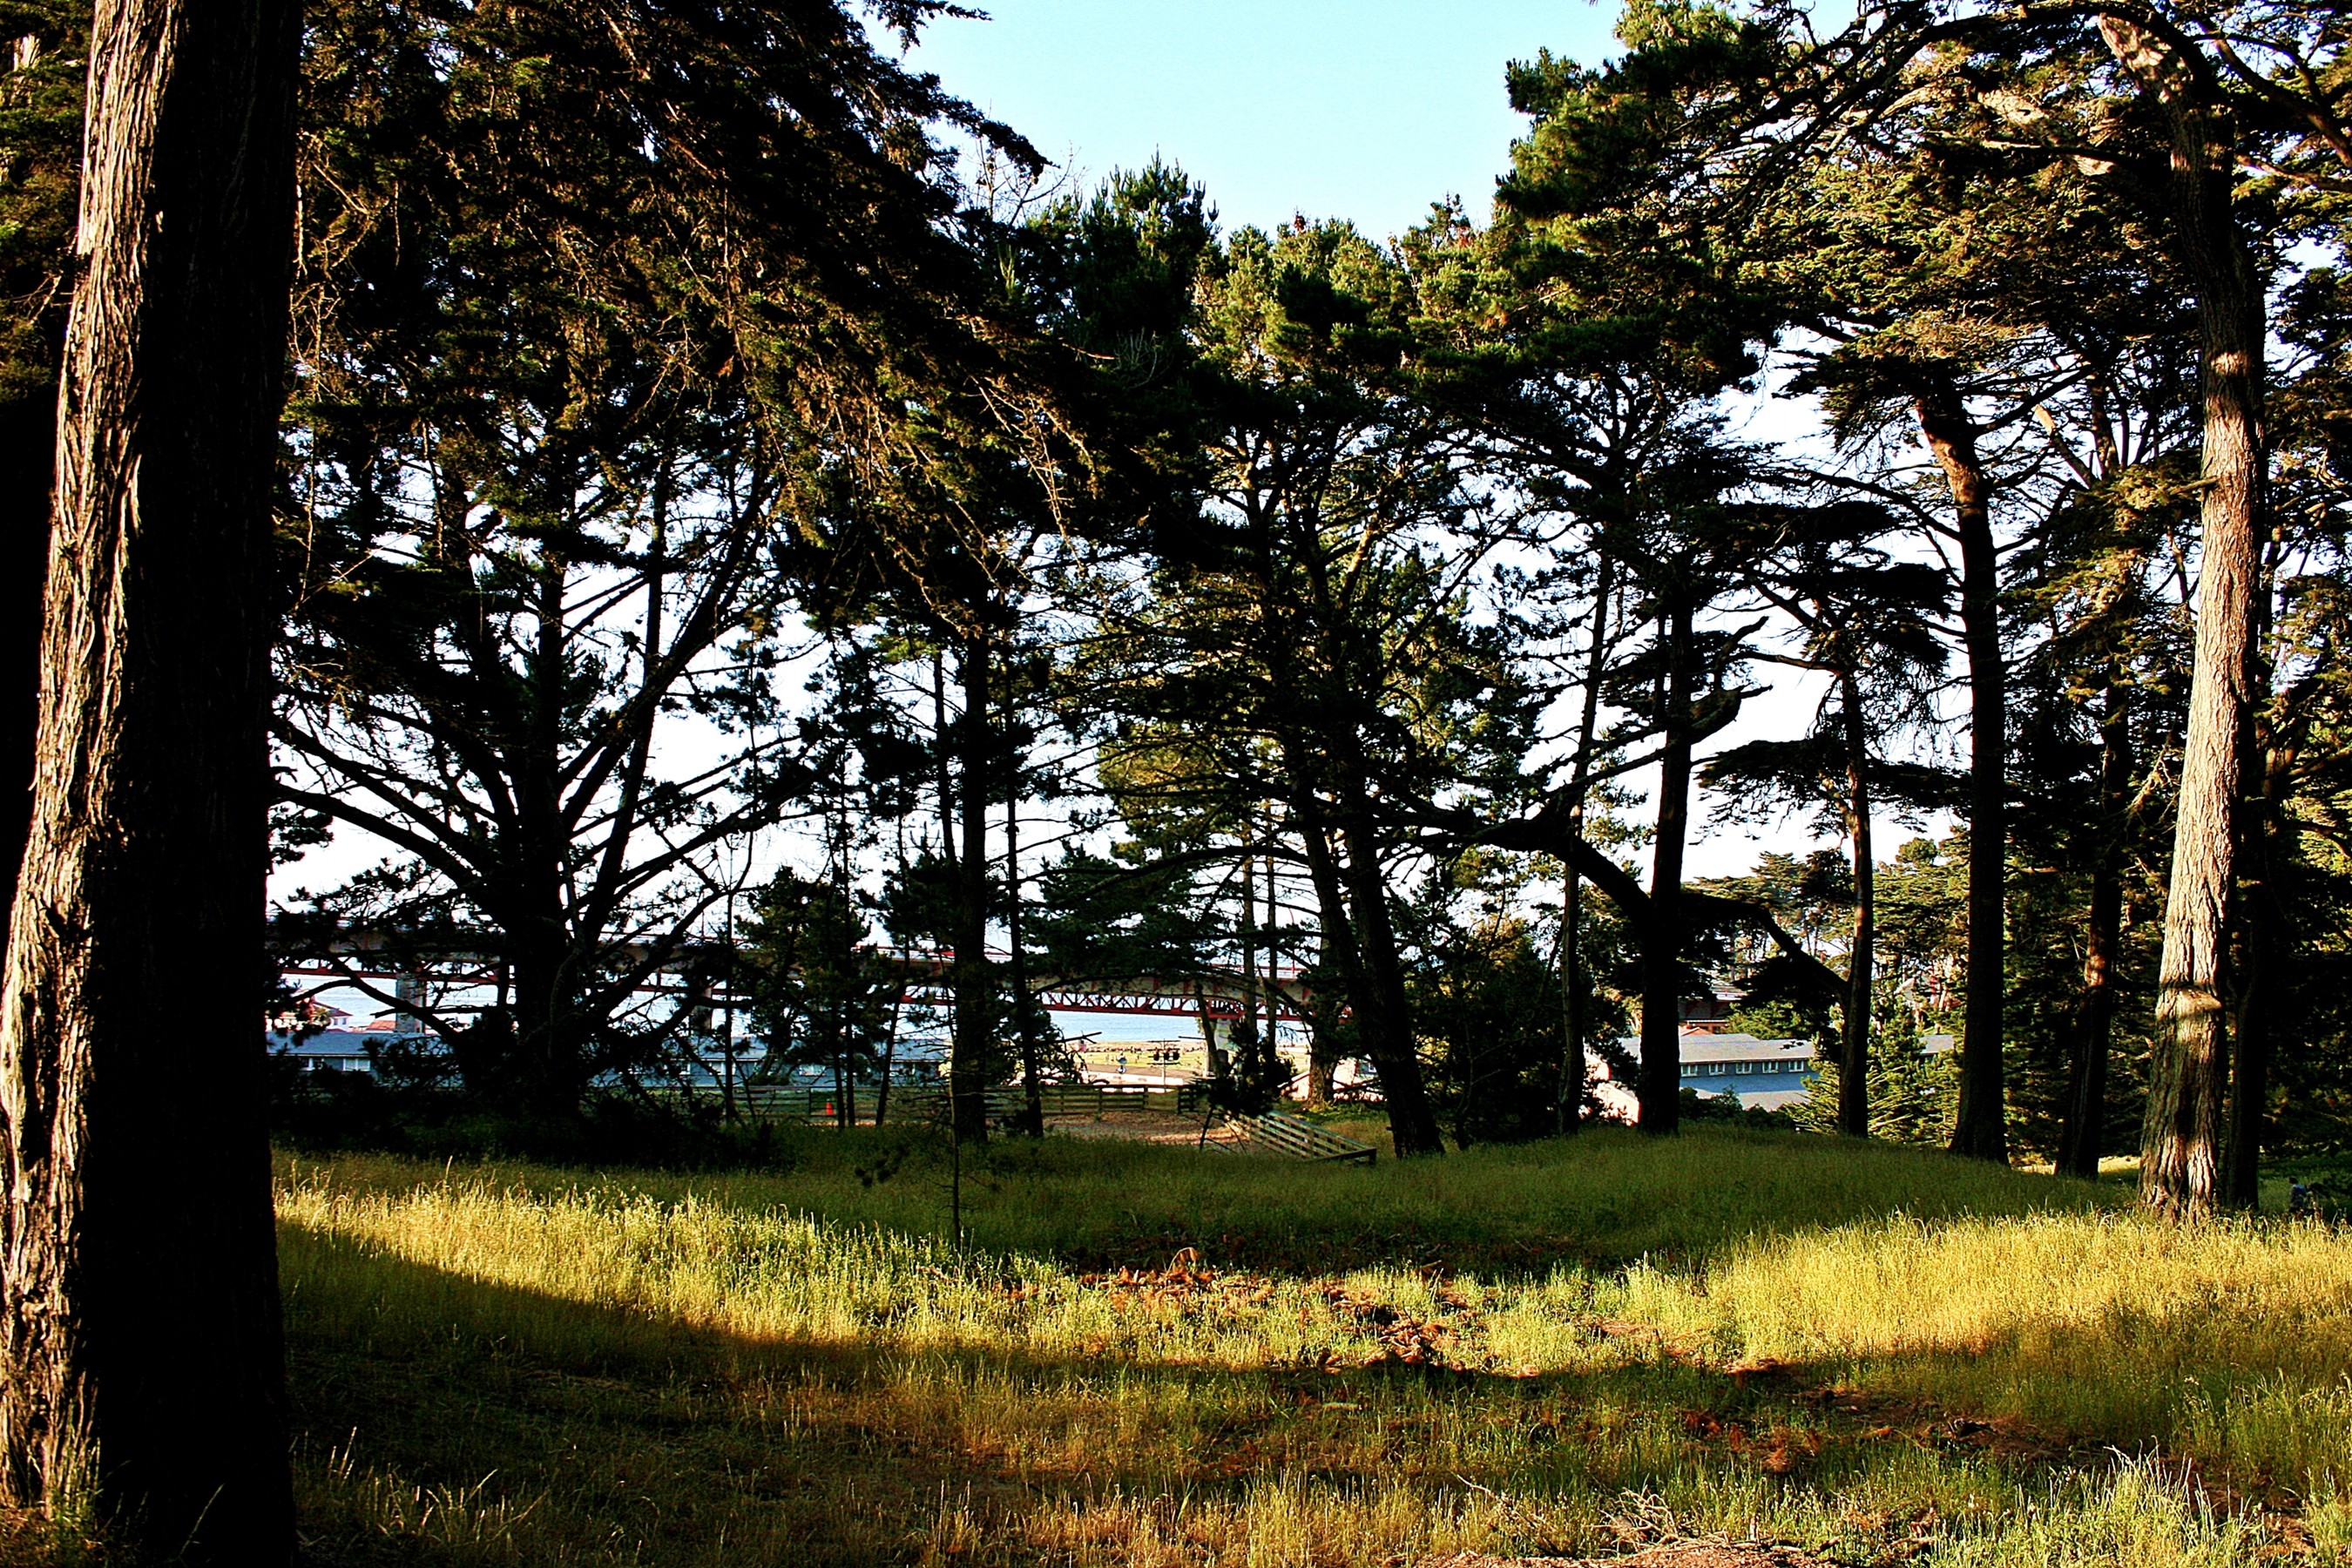 General 2700x1800 nature USA San Francisco Bay San Francisco trees outdoors